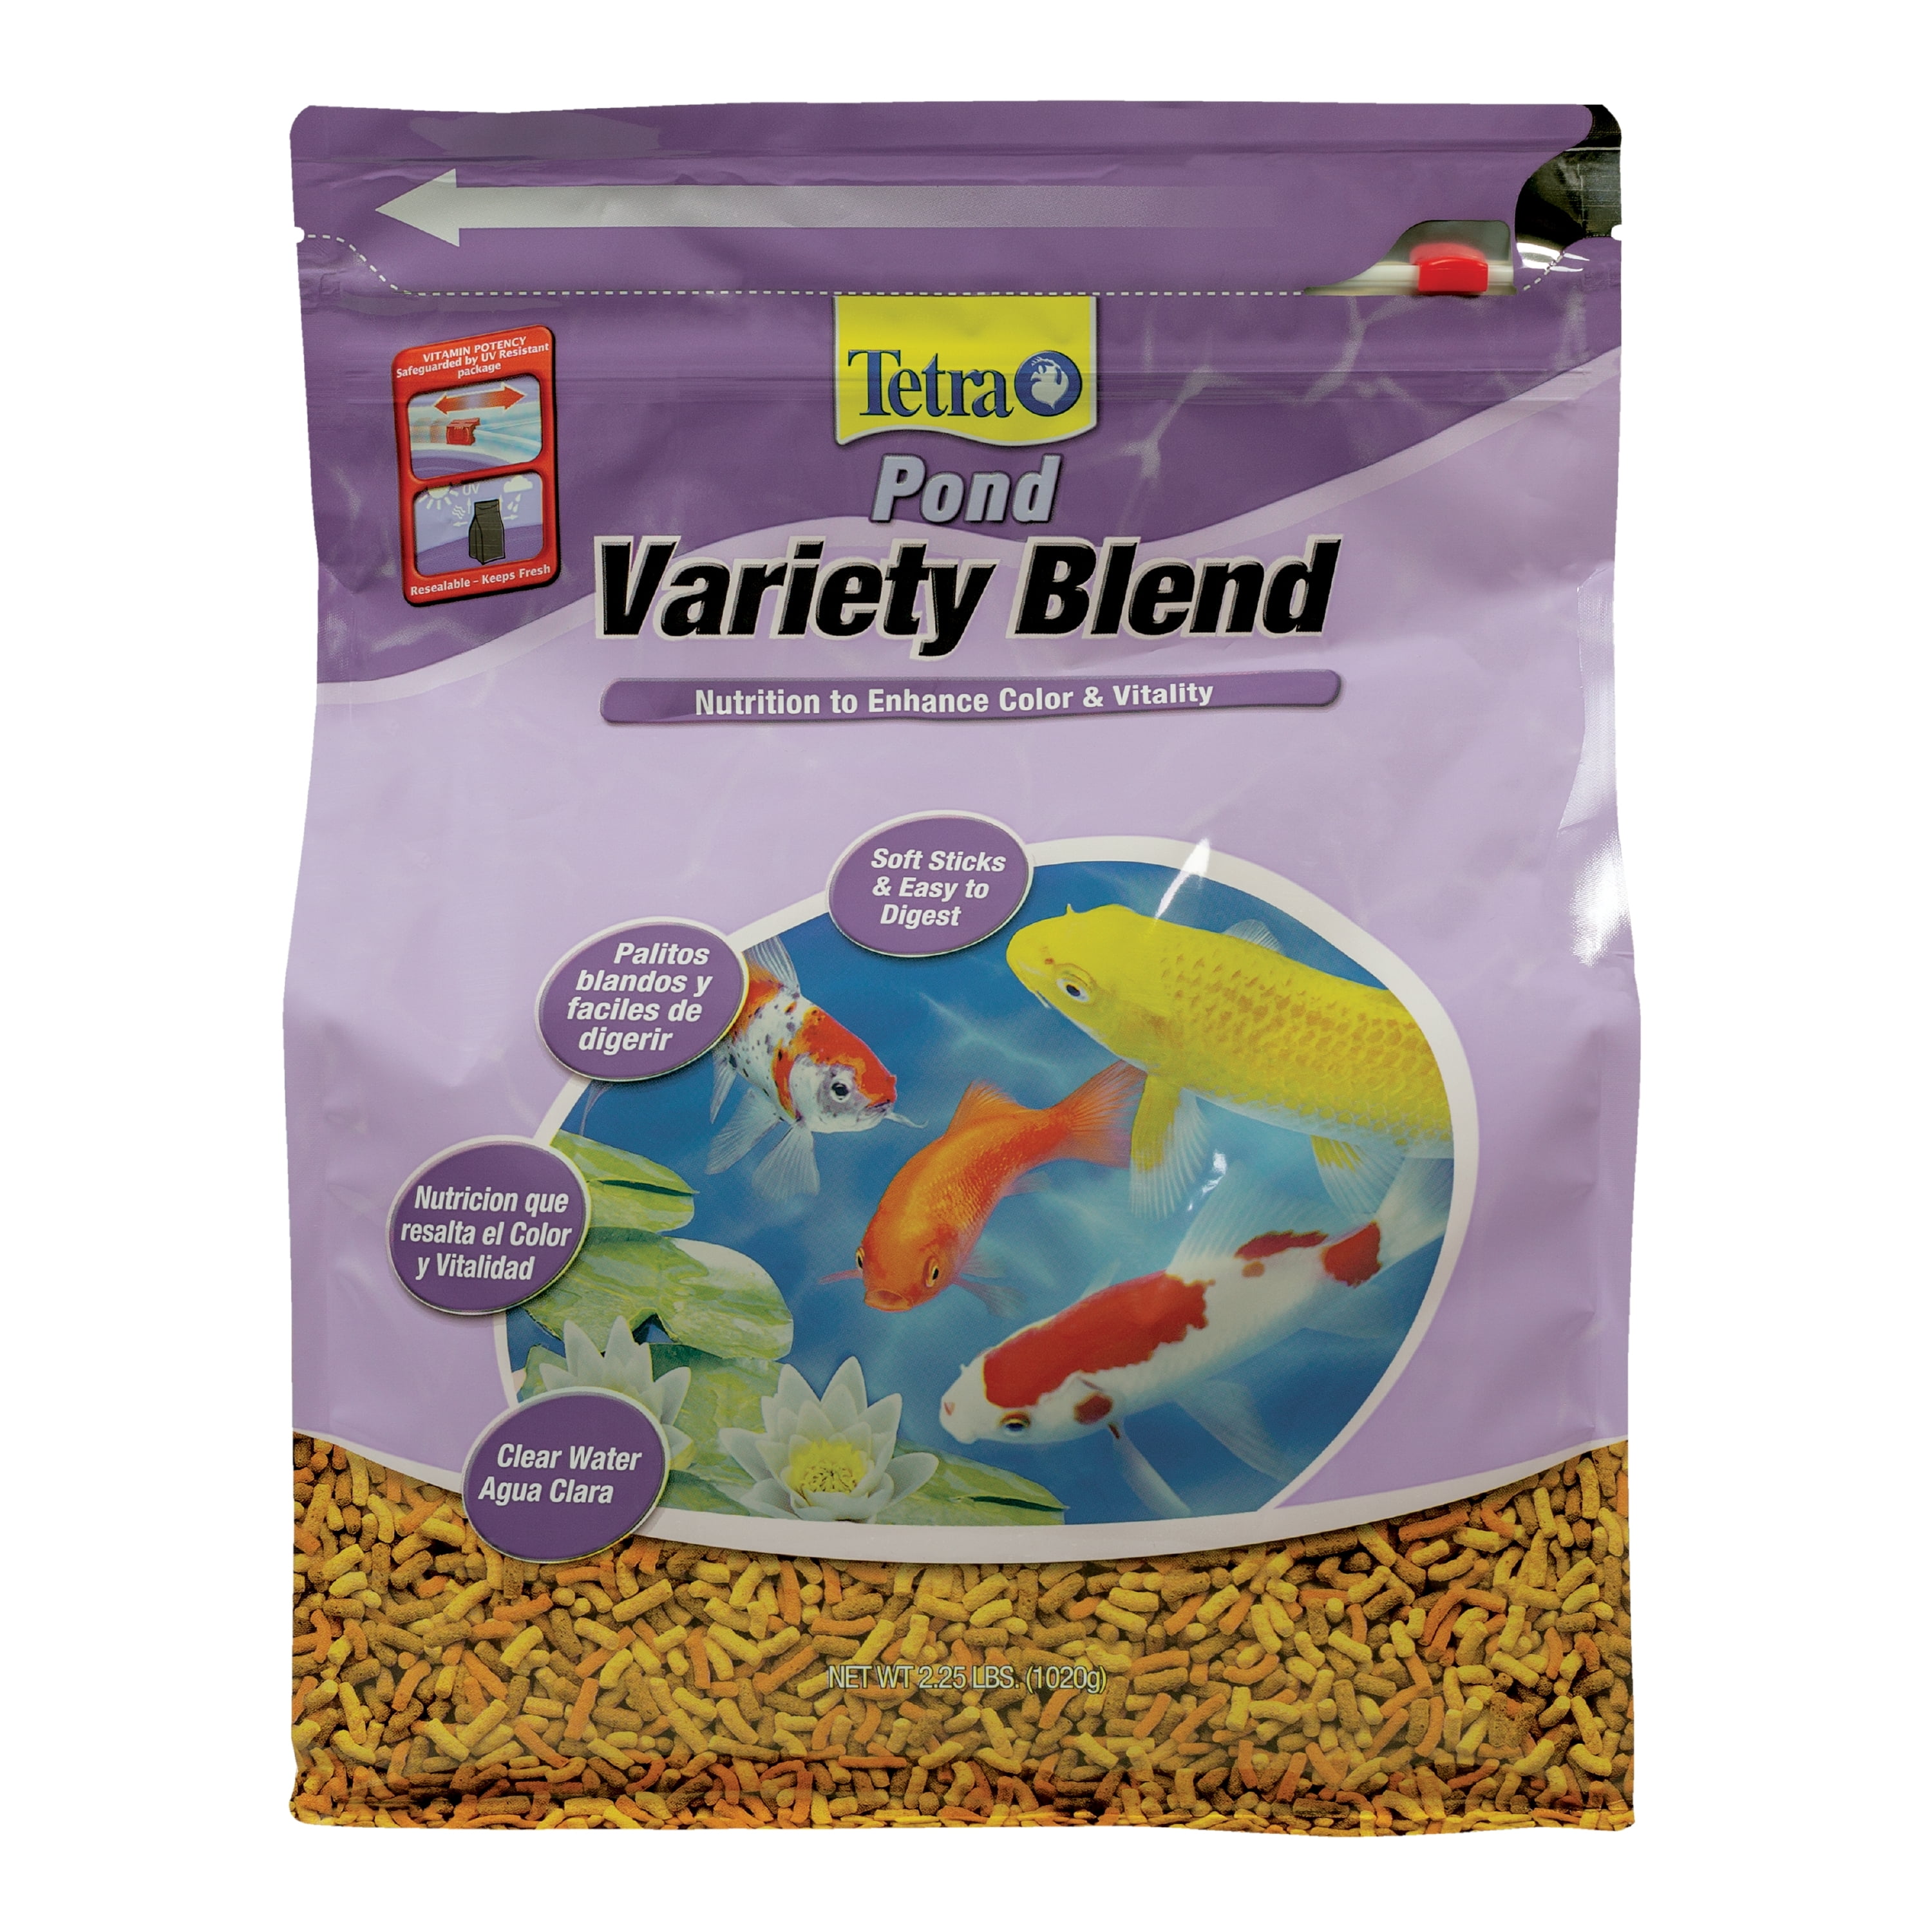 TETRA Pond GoldFish Mix 1L mélange alimentaire idéalement